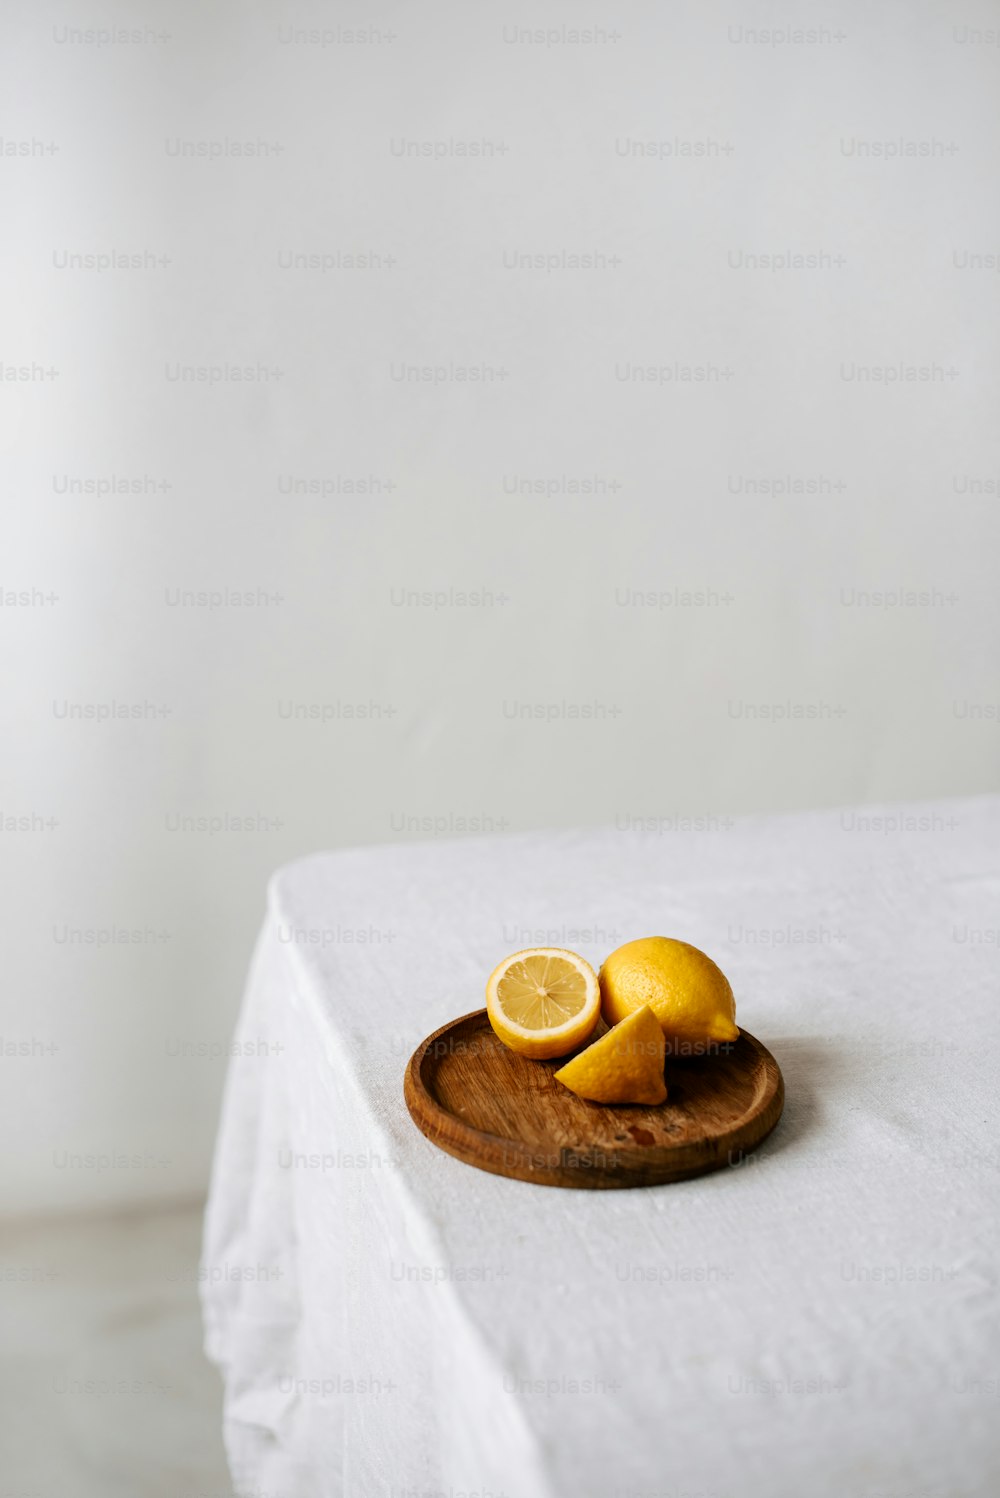 테이블 위에 얇게 썬 레몬을 얹은 나무 접시